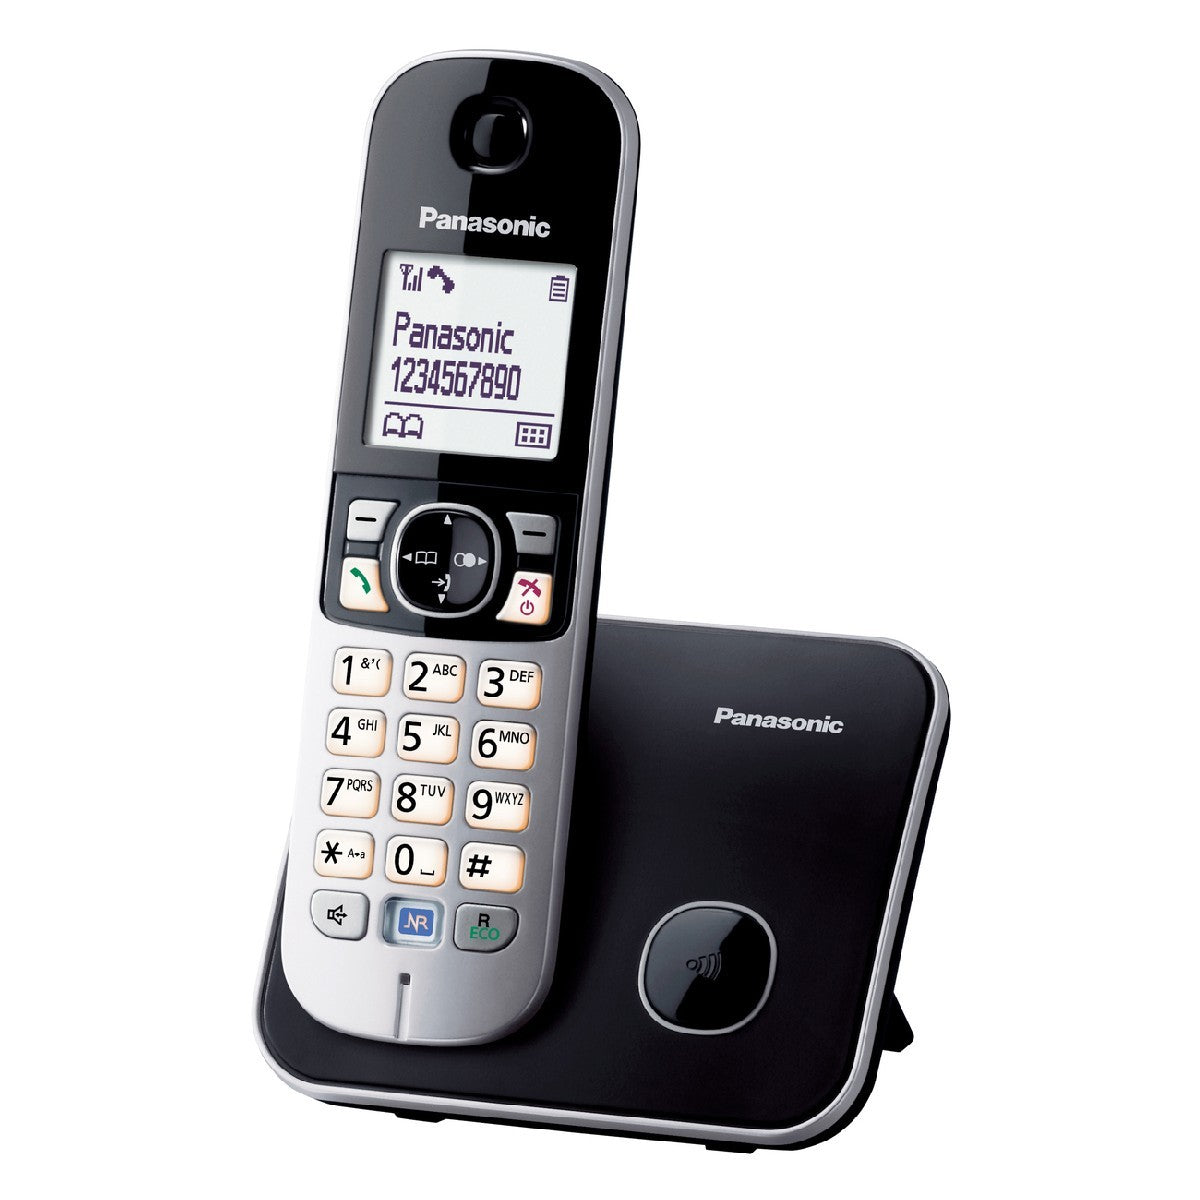 Ασύρματο Ψηφιακό Τηλέφωνο Panasonic KX-TG6851JTB με Μεγάλη Οθόνη και Ανοιχτή Ακρόαση